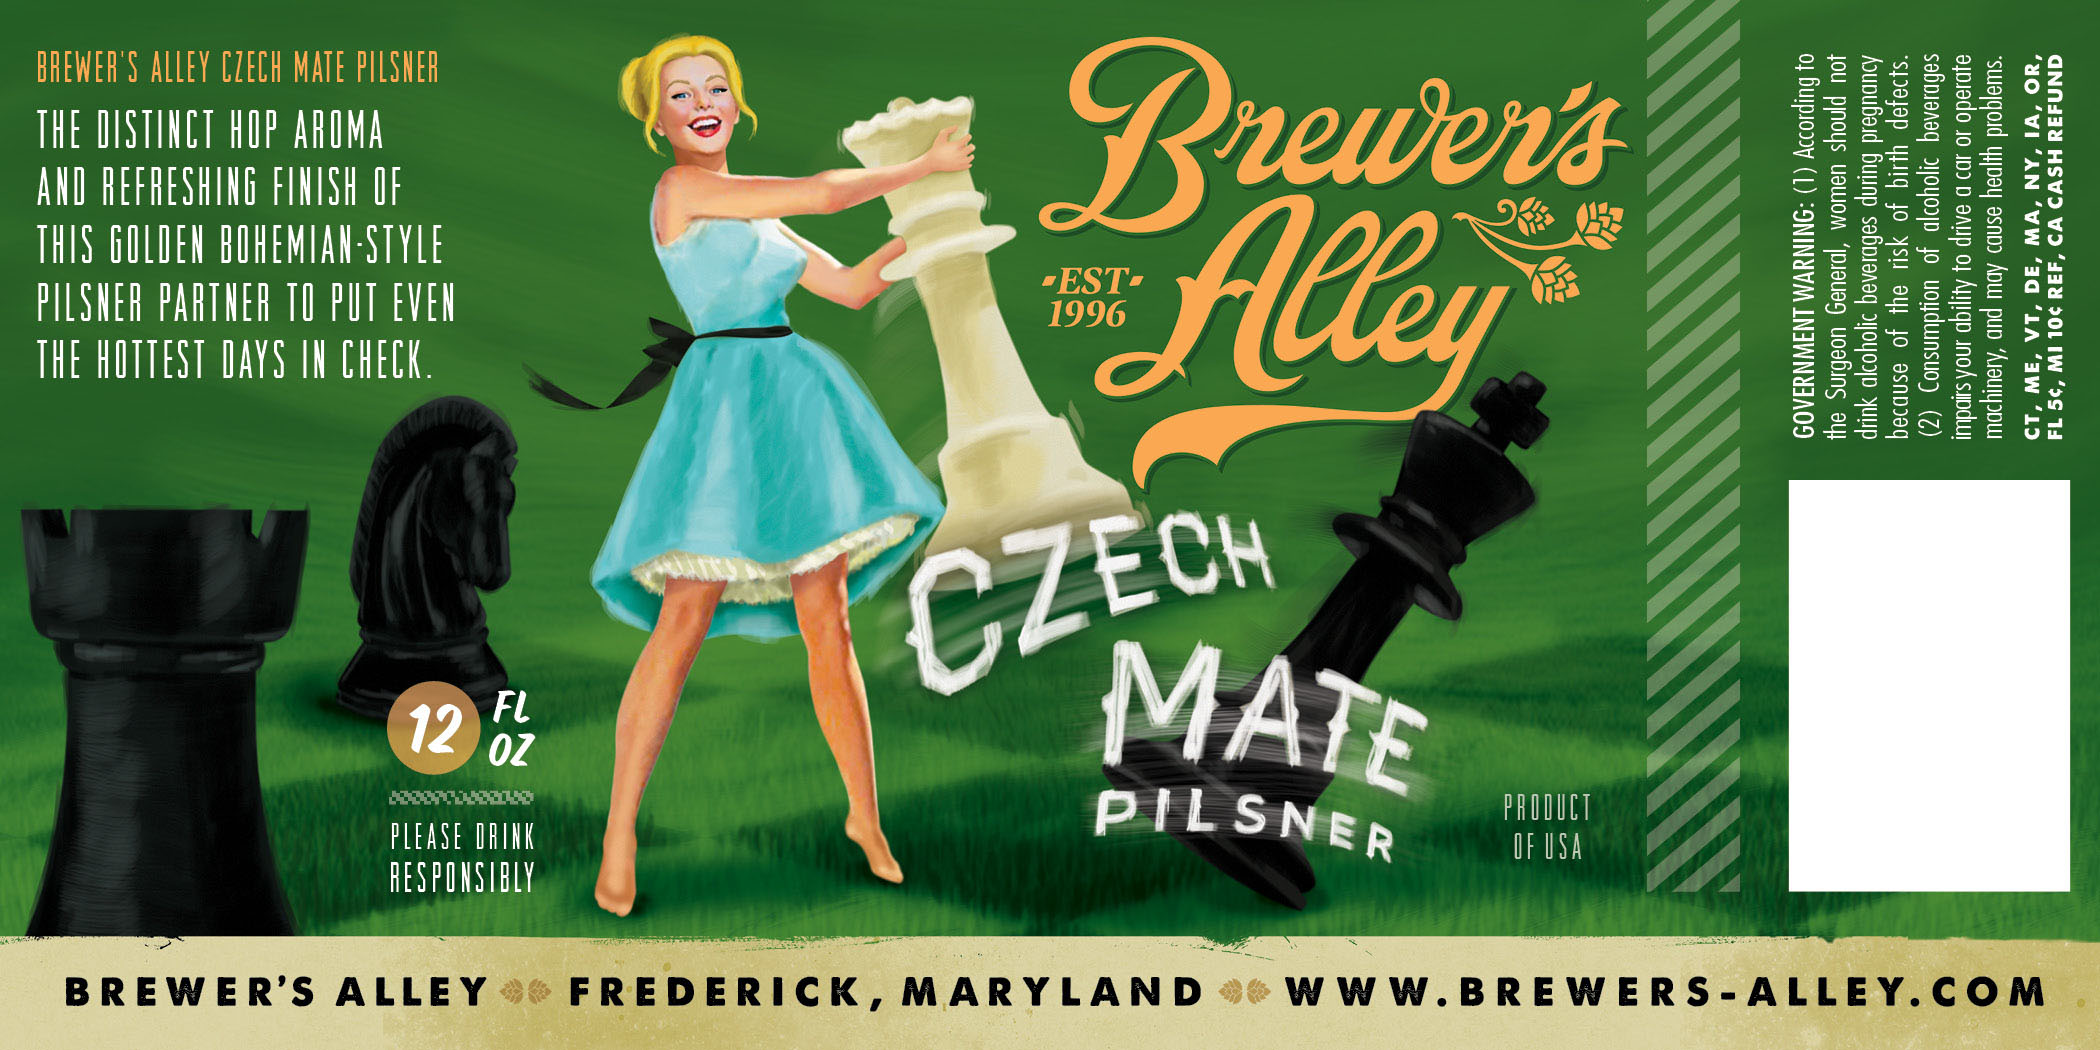 Brewer's Alley Czech Mate Pilsner